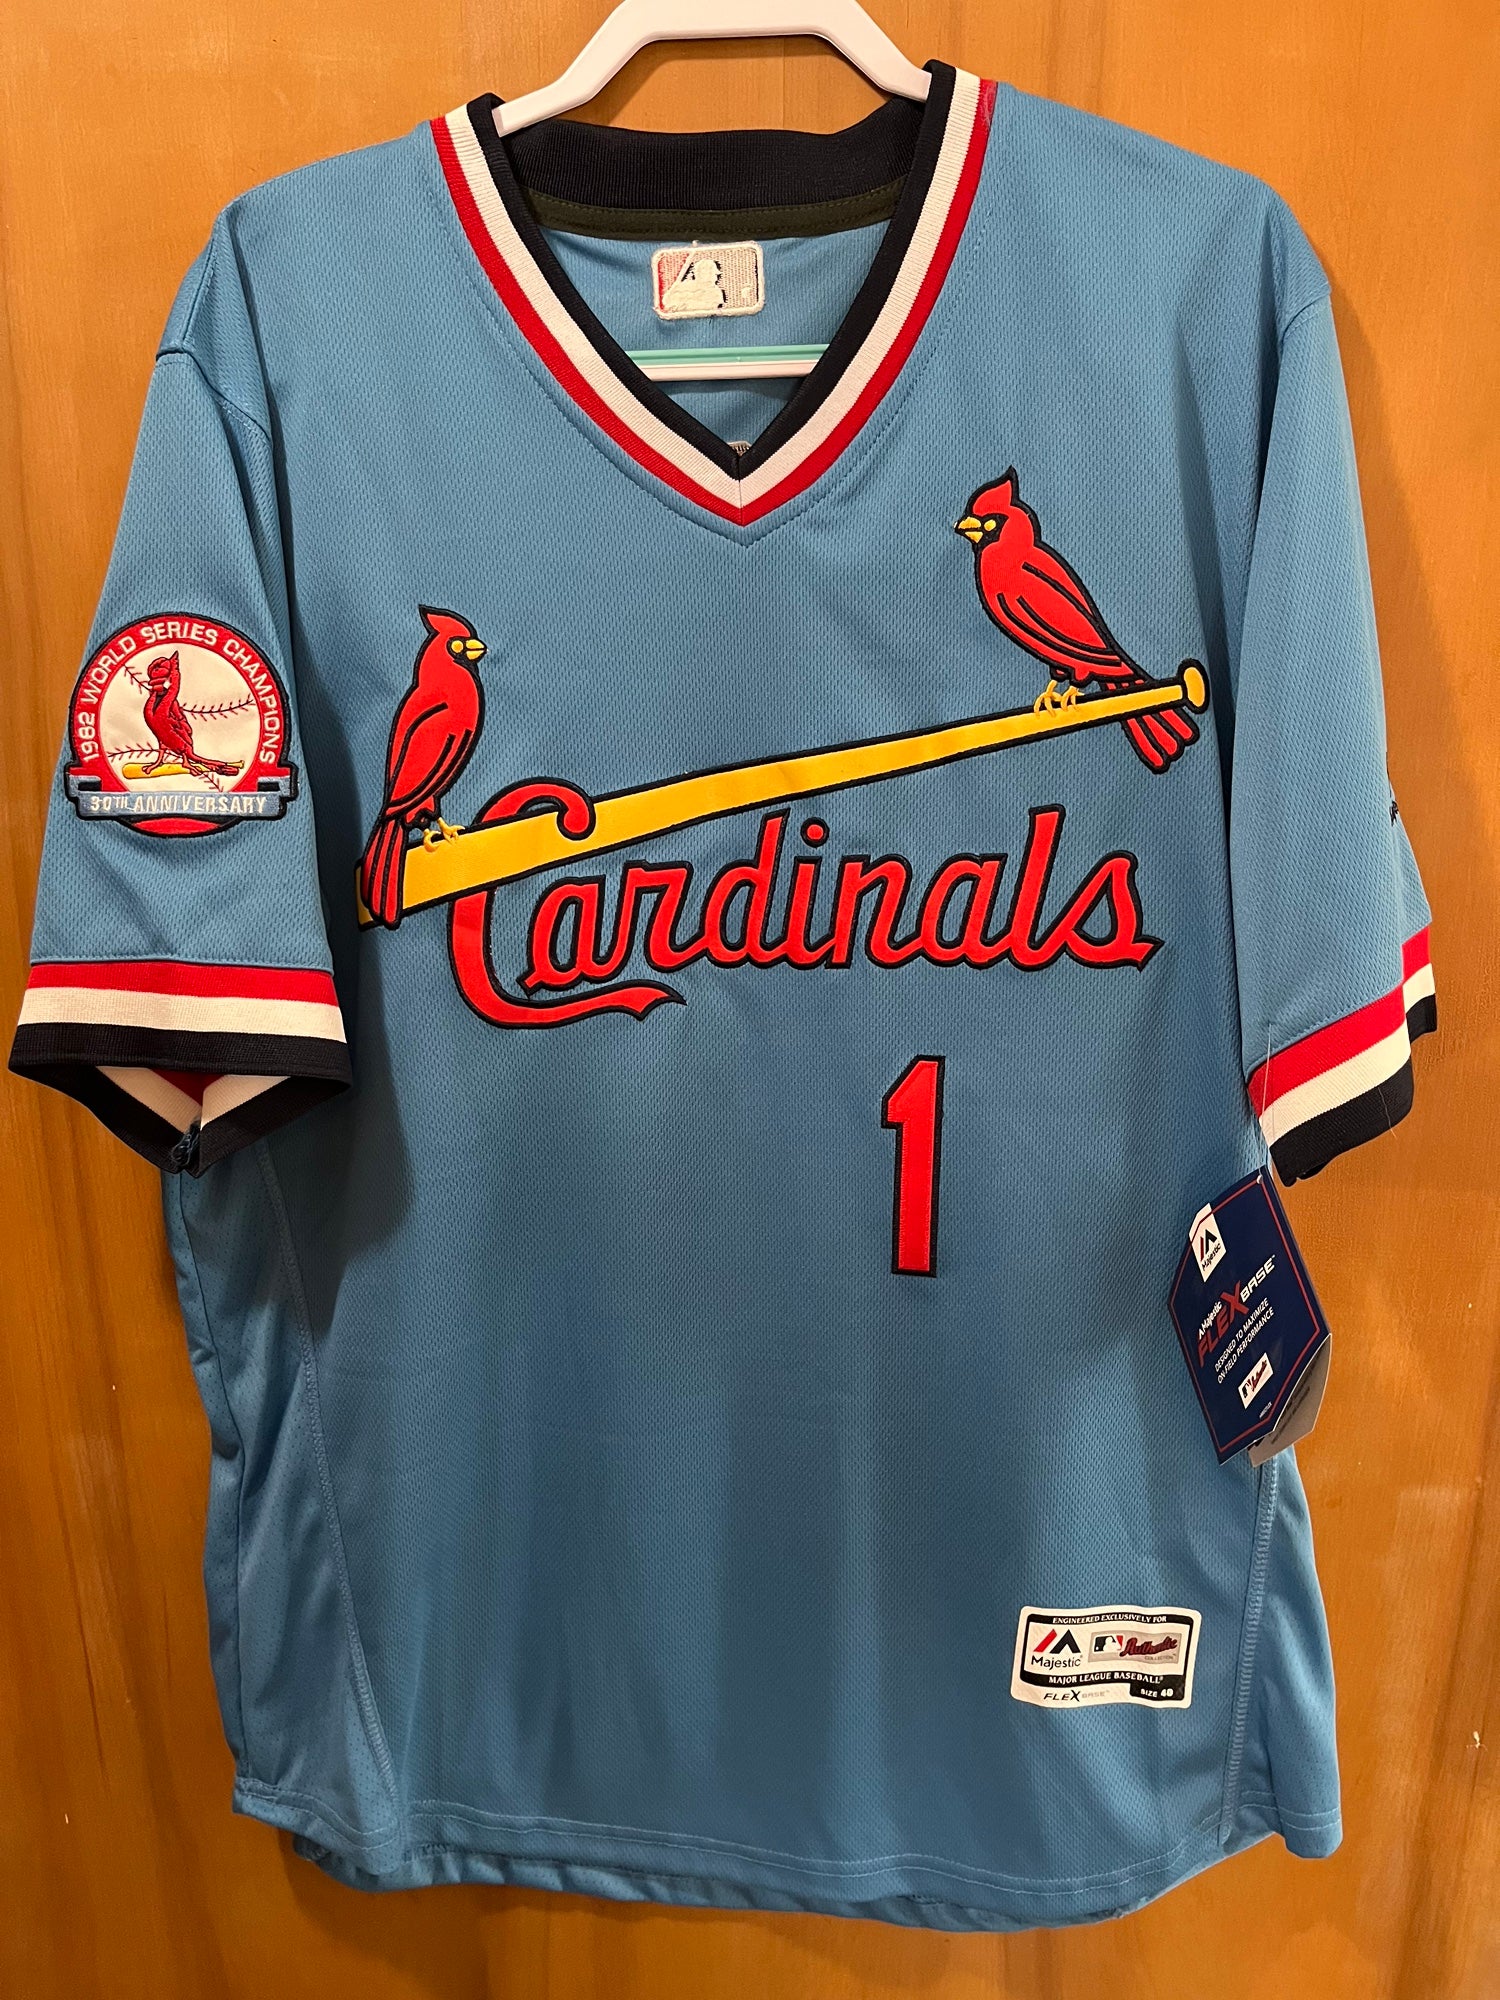 1982 cardinals jersey